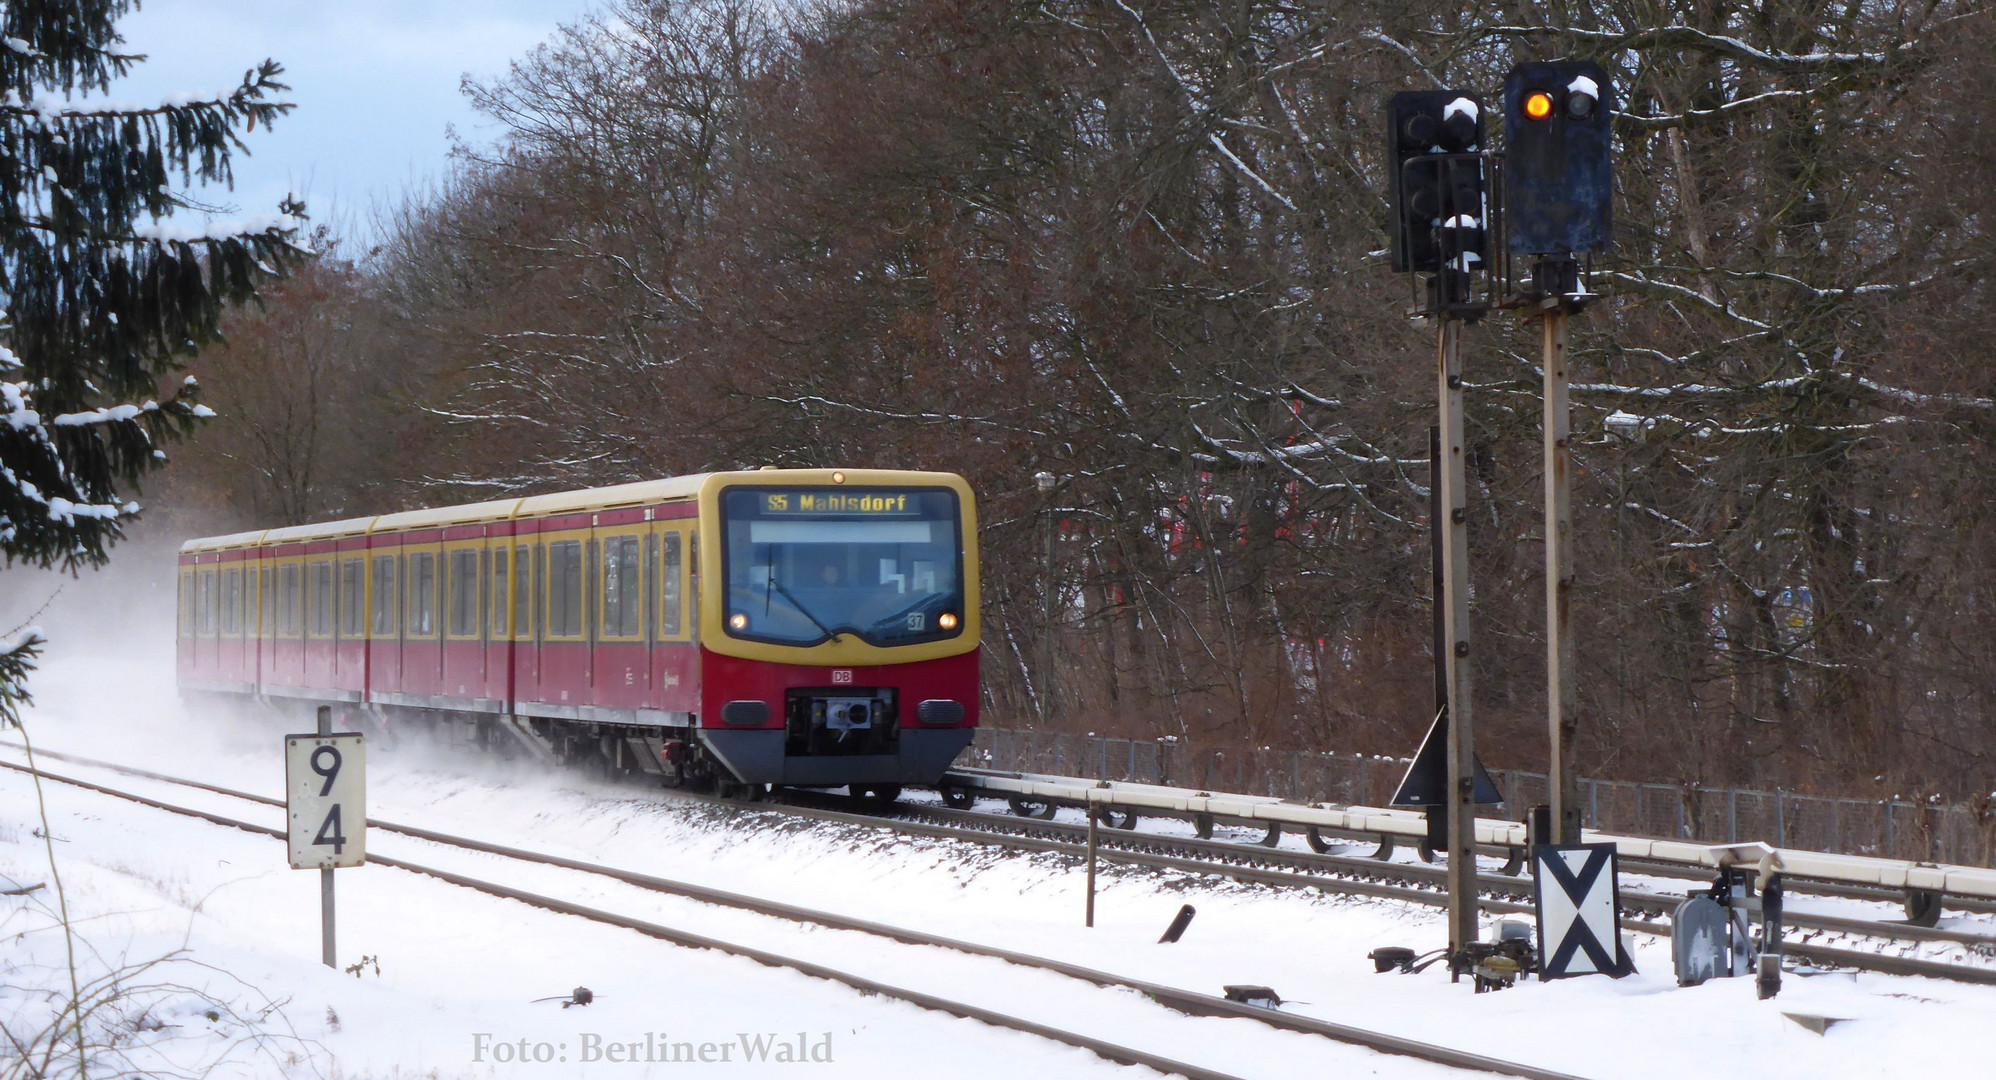 Januar 2017 / S- Bahn Berlin / zw. Biesdorf & Wuhletal